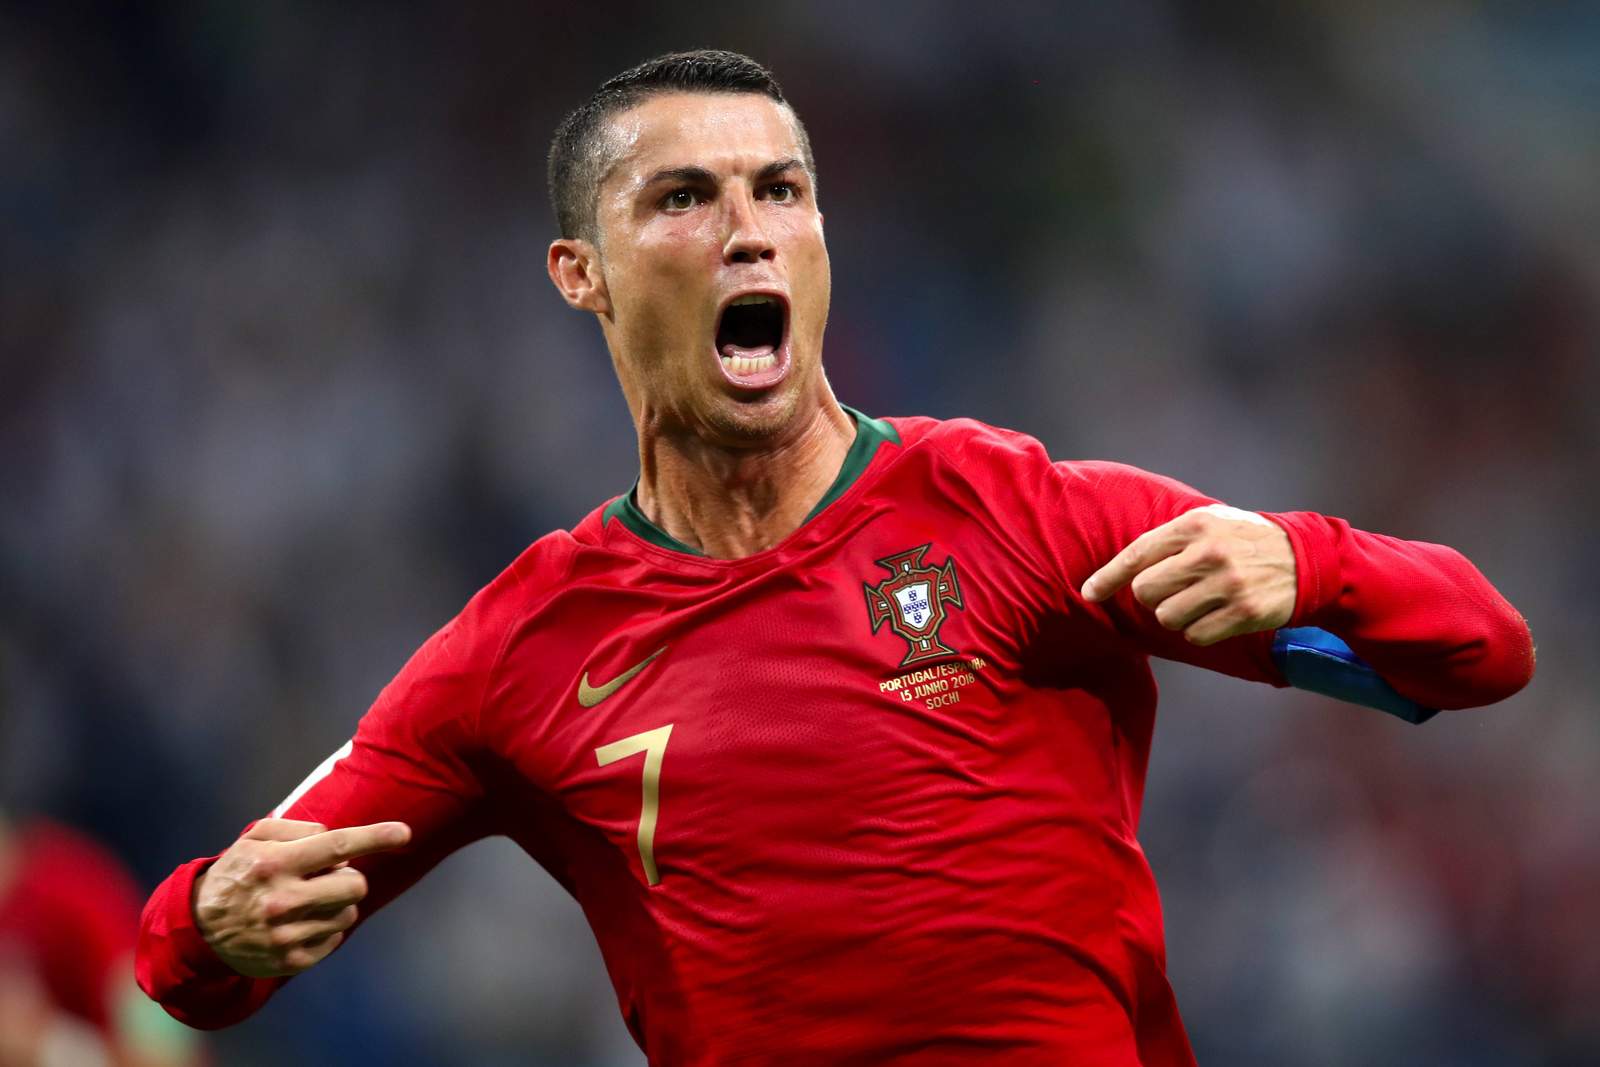 Jubelt Ronaldo erneut? Jetzt auf Portugal gegen Marokko wetten